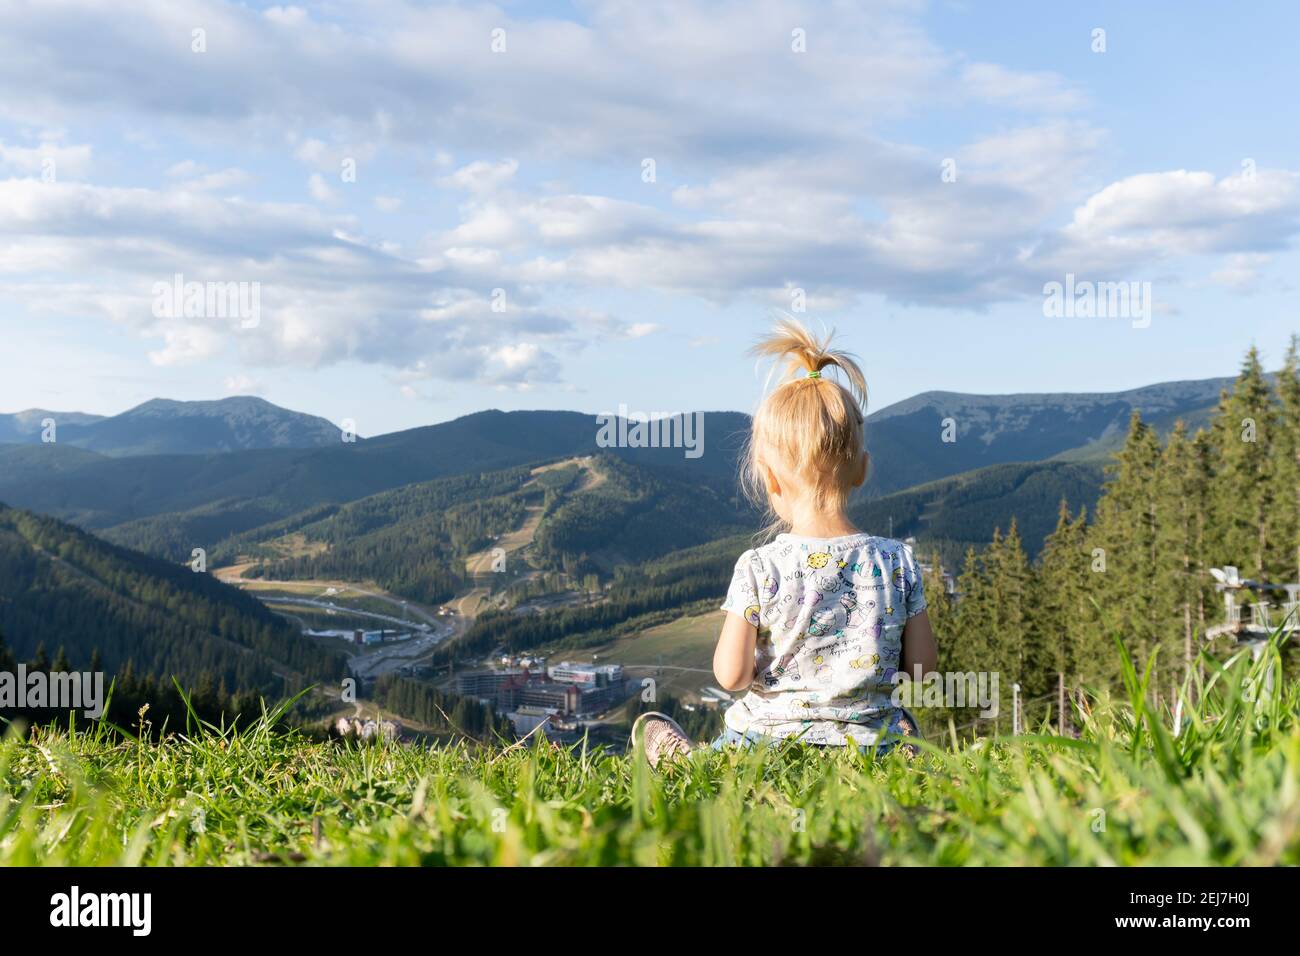 Bambino seduto su erba verde nella parte superiore del collina con vista sulle montagne Foto Stock